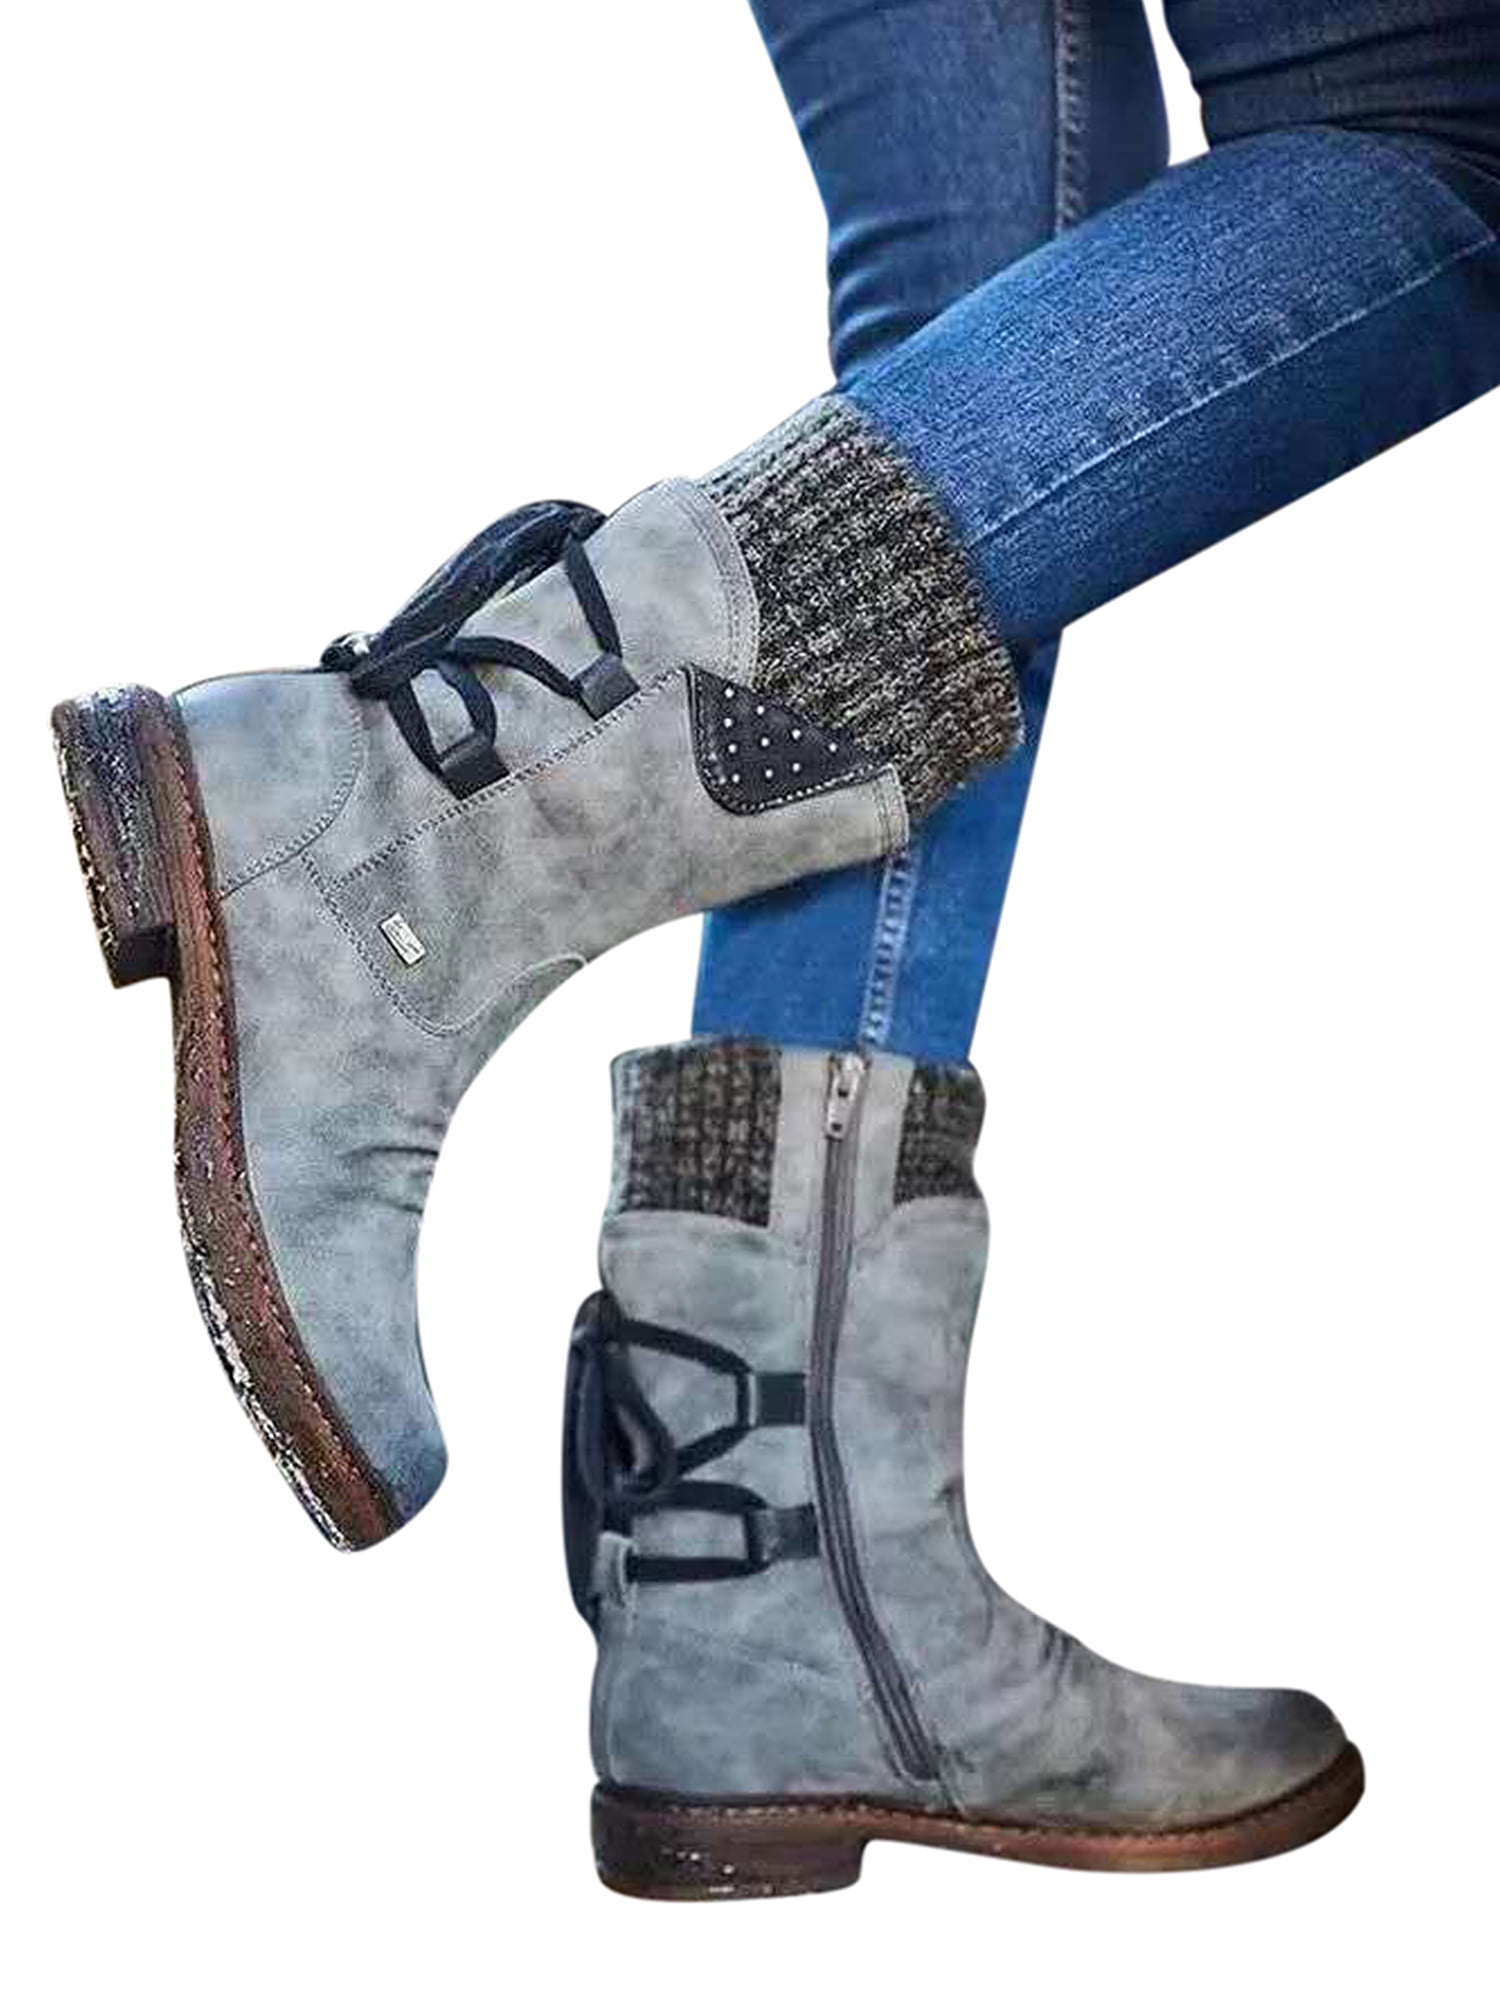 Details about   New Women's Retro Low Block Heel Chelsea Ankle Boots Ladies Zipper Comfy Shoes D